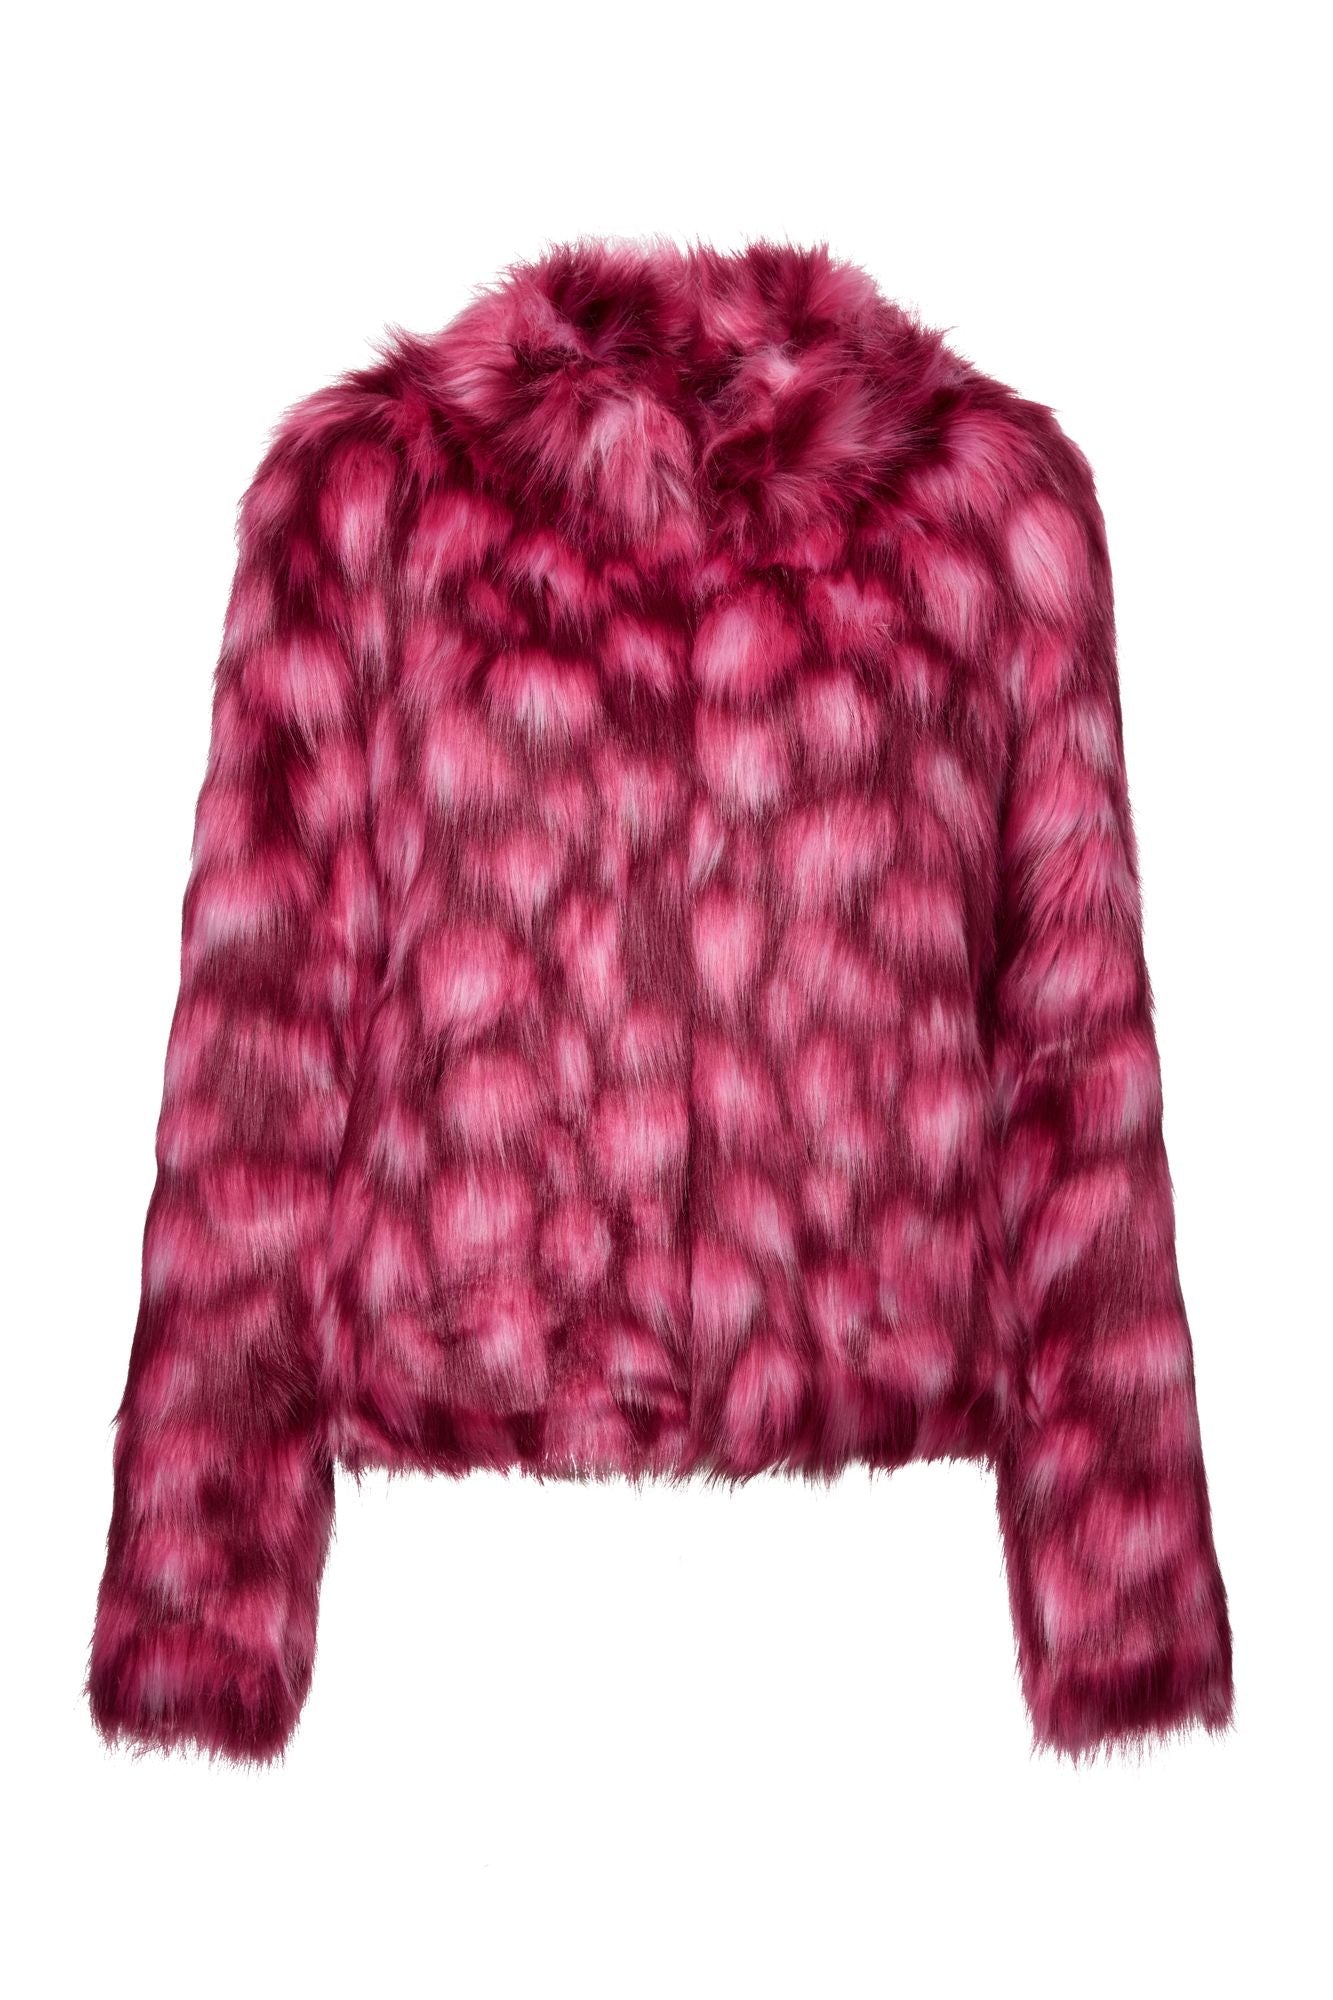 Glow Jacket - Pink Leopard-UF-Lima & Co